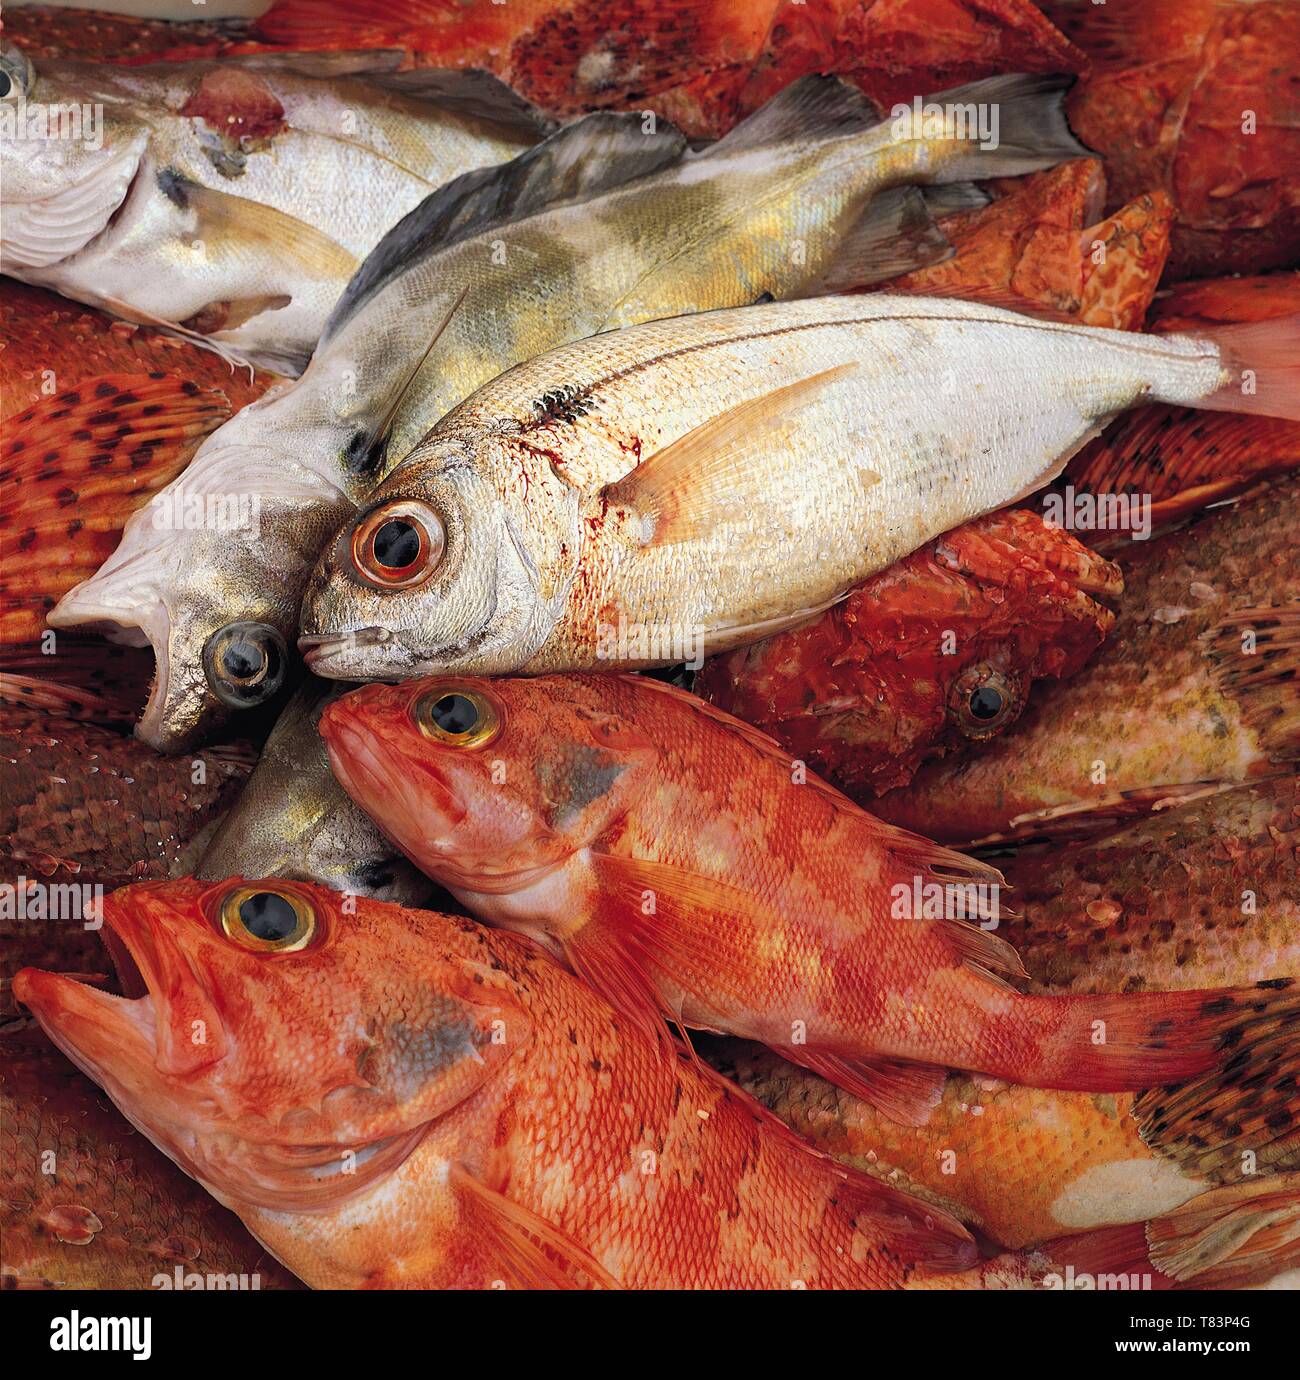 Spain, Asturias, fish recently caught Stock Photo